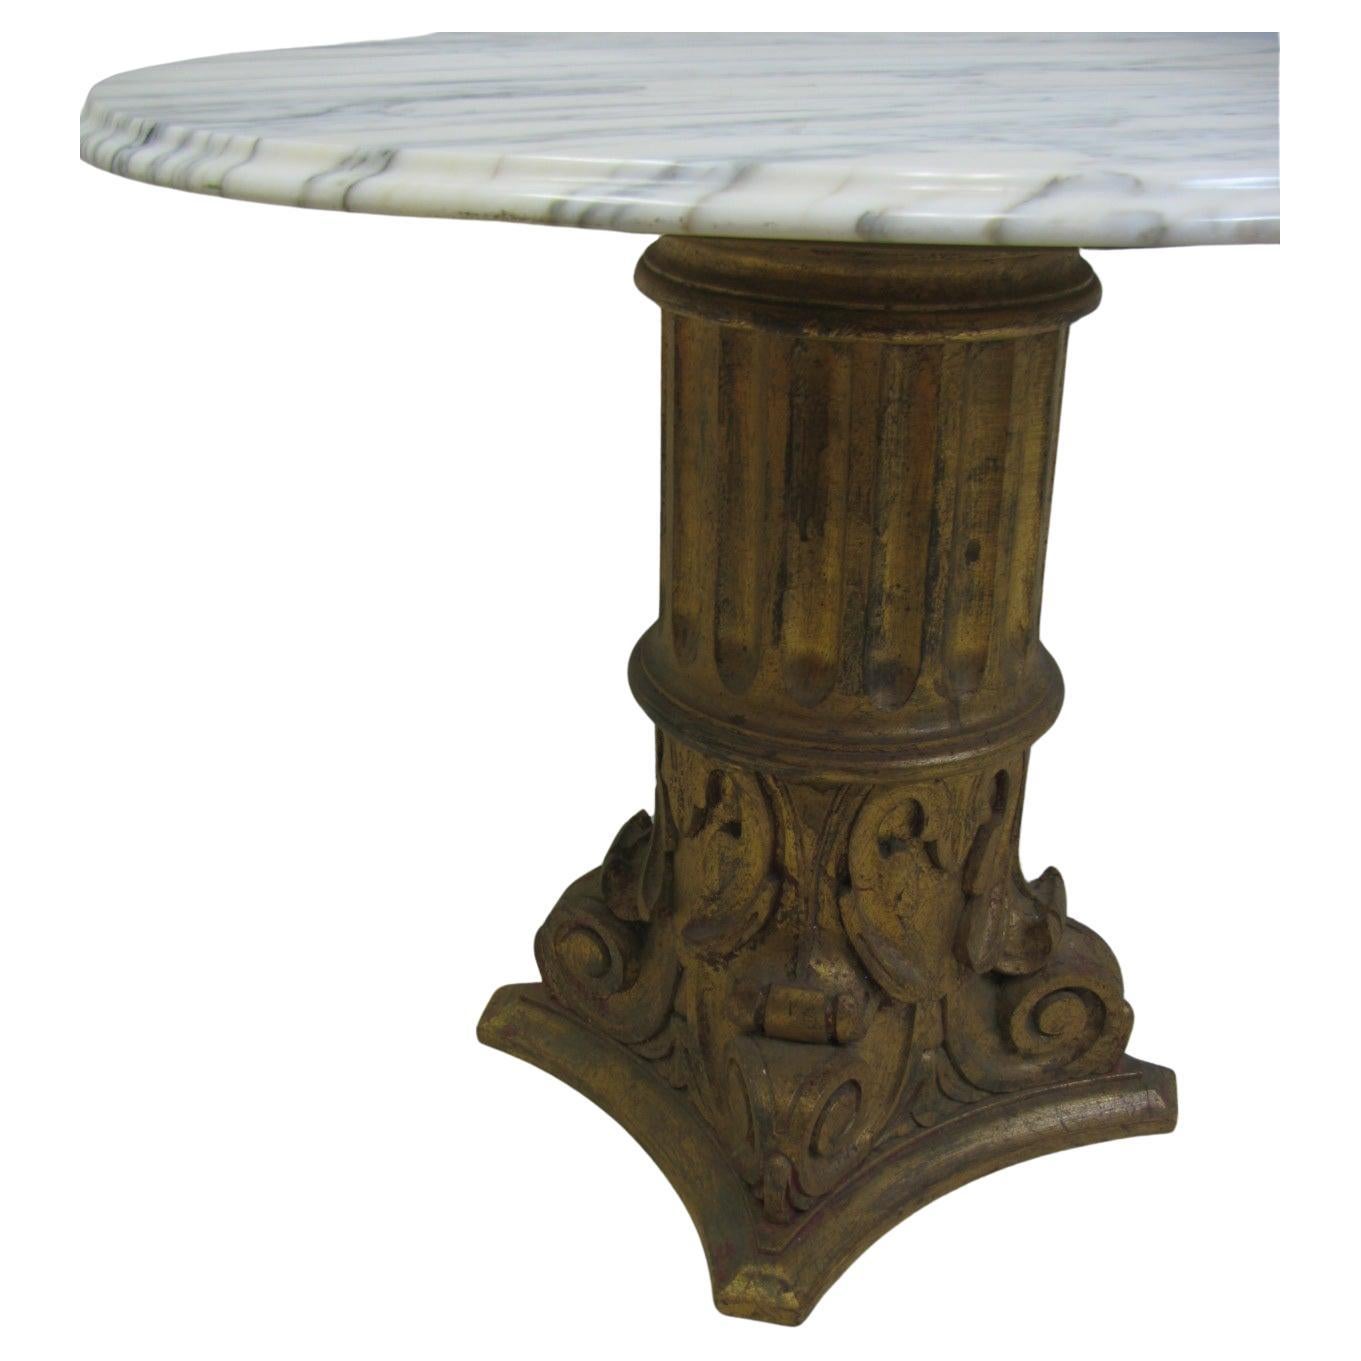 Table européenne en marbre de style régence hollywoodienne du milieu du siècle. La base en bois qui est dorée a été sculptée en Espagne, le marbre provient d'Italie.